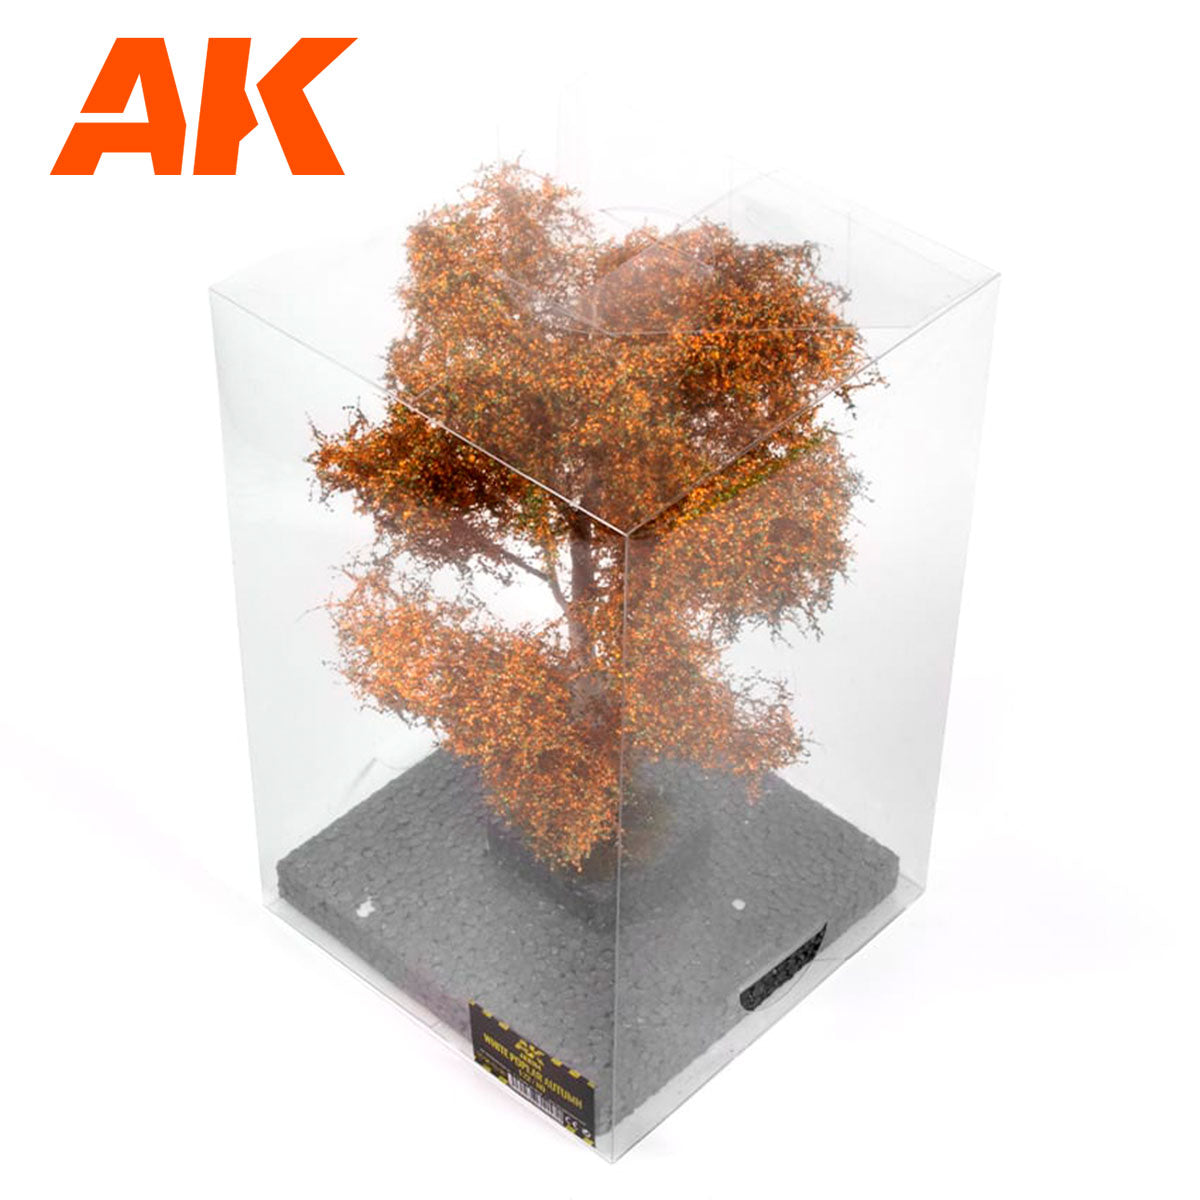 AK8184 - White poplar Autumn Tree 1/72